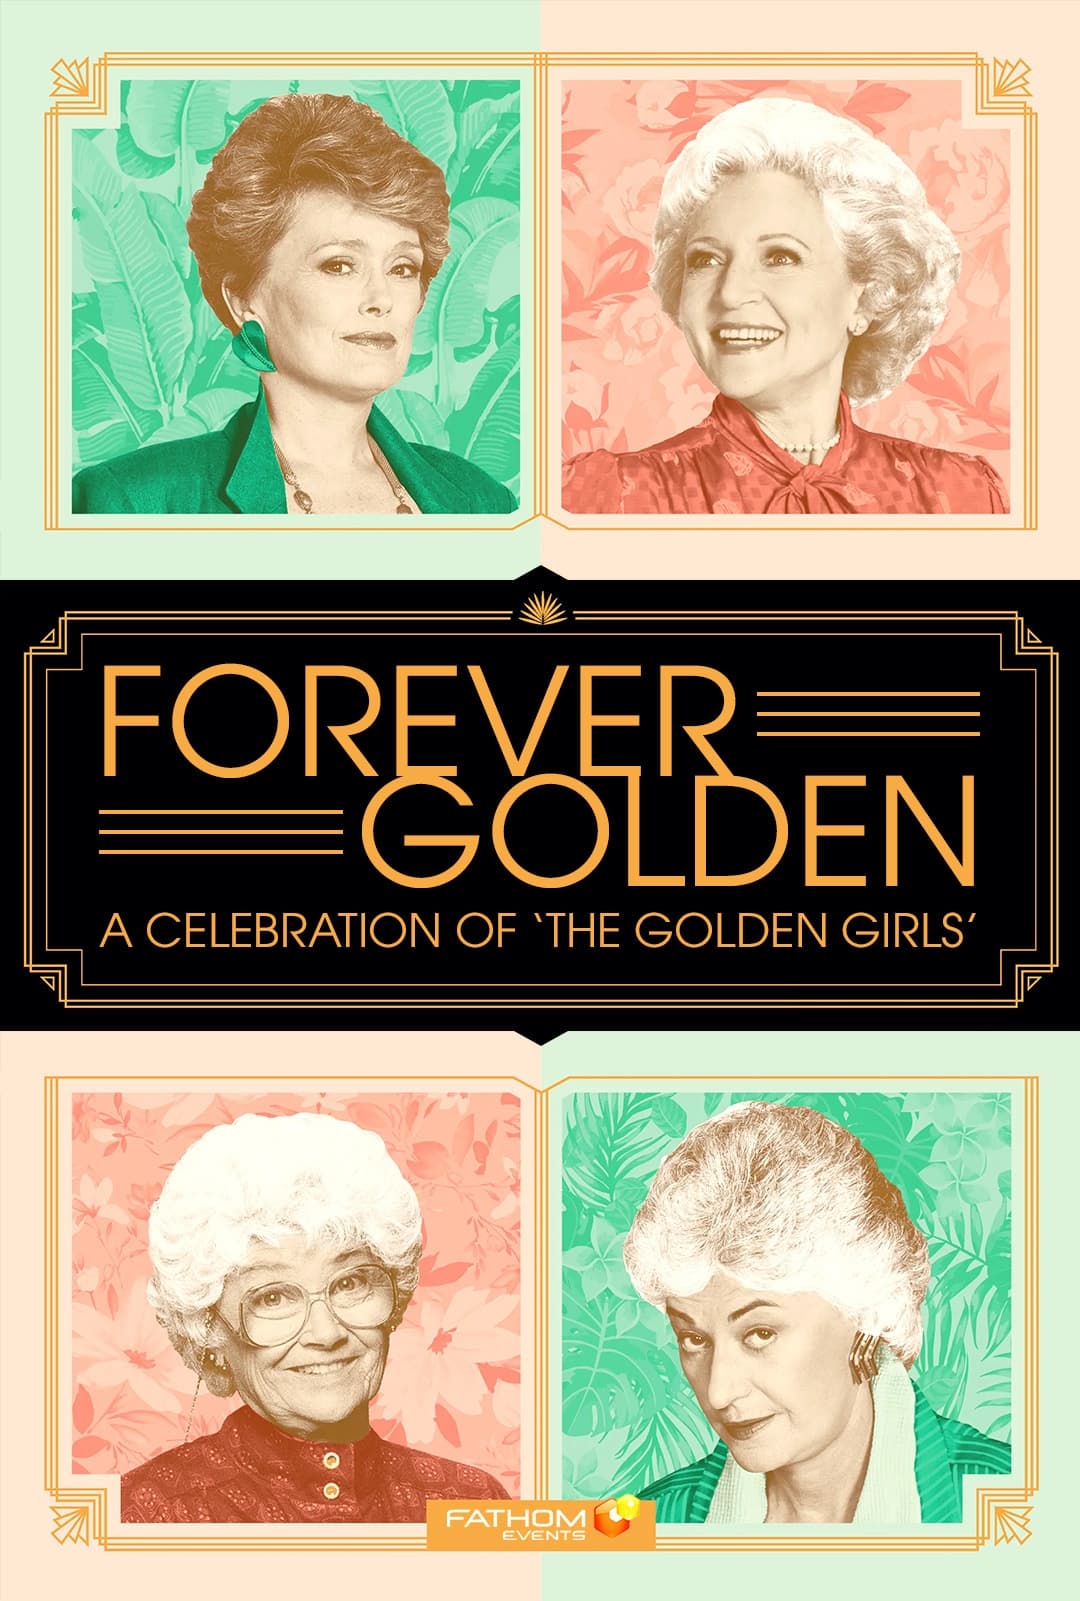 Forever Golden! A Celebration of the Golden Girls